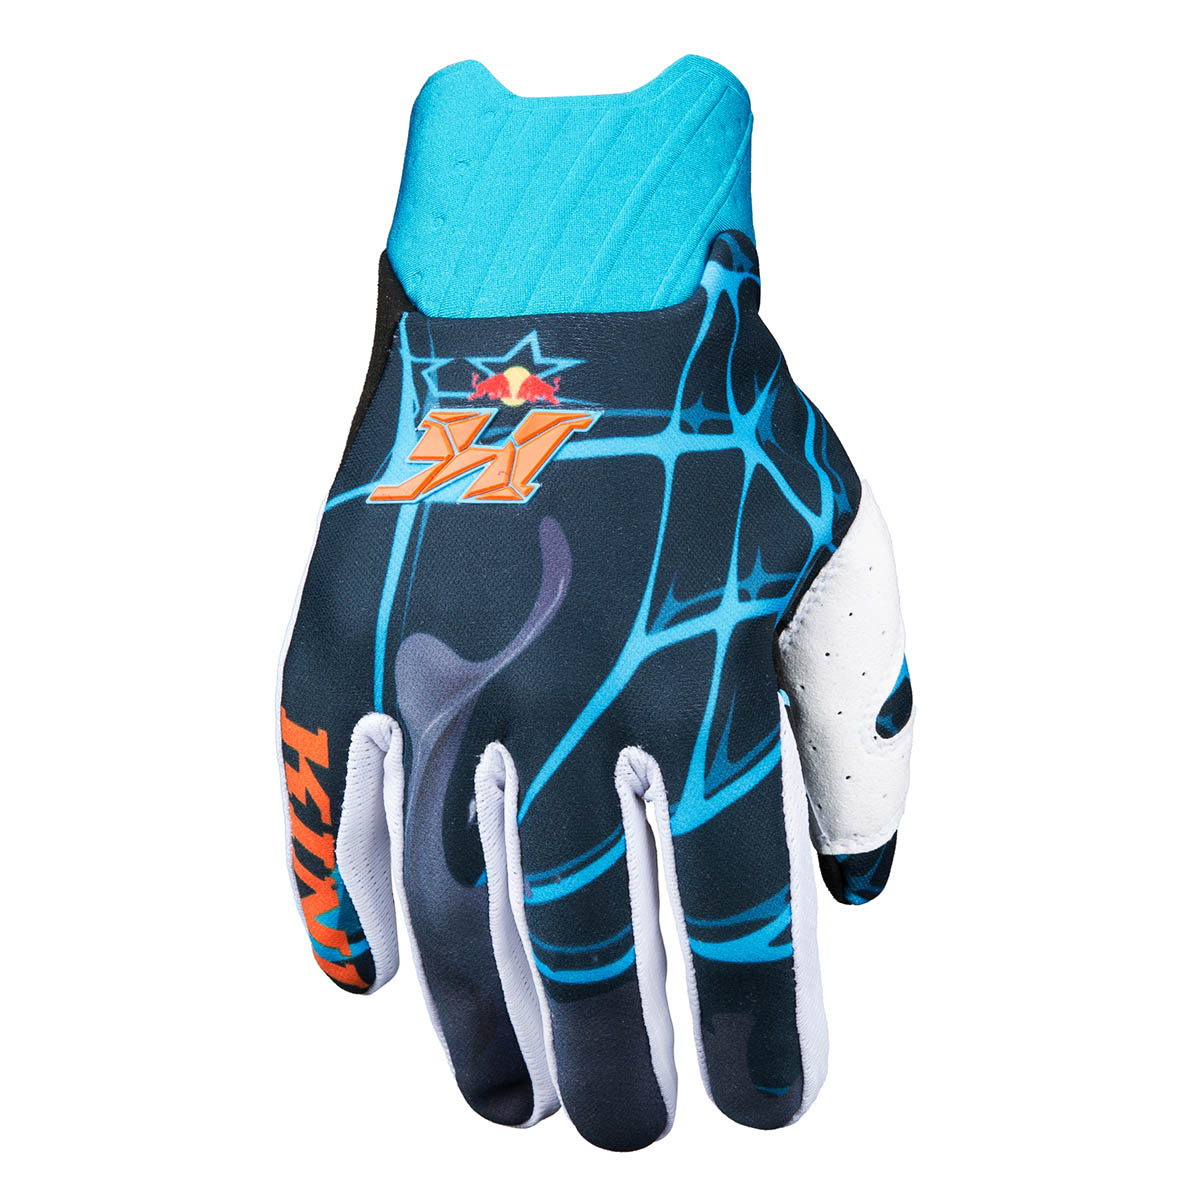 Kini Red Bull Gloves Revolution Black/Blue/Orange